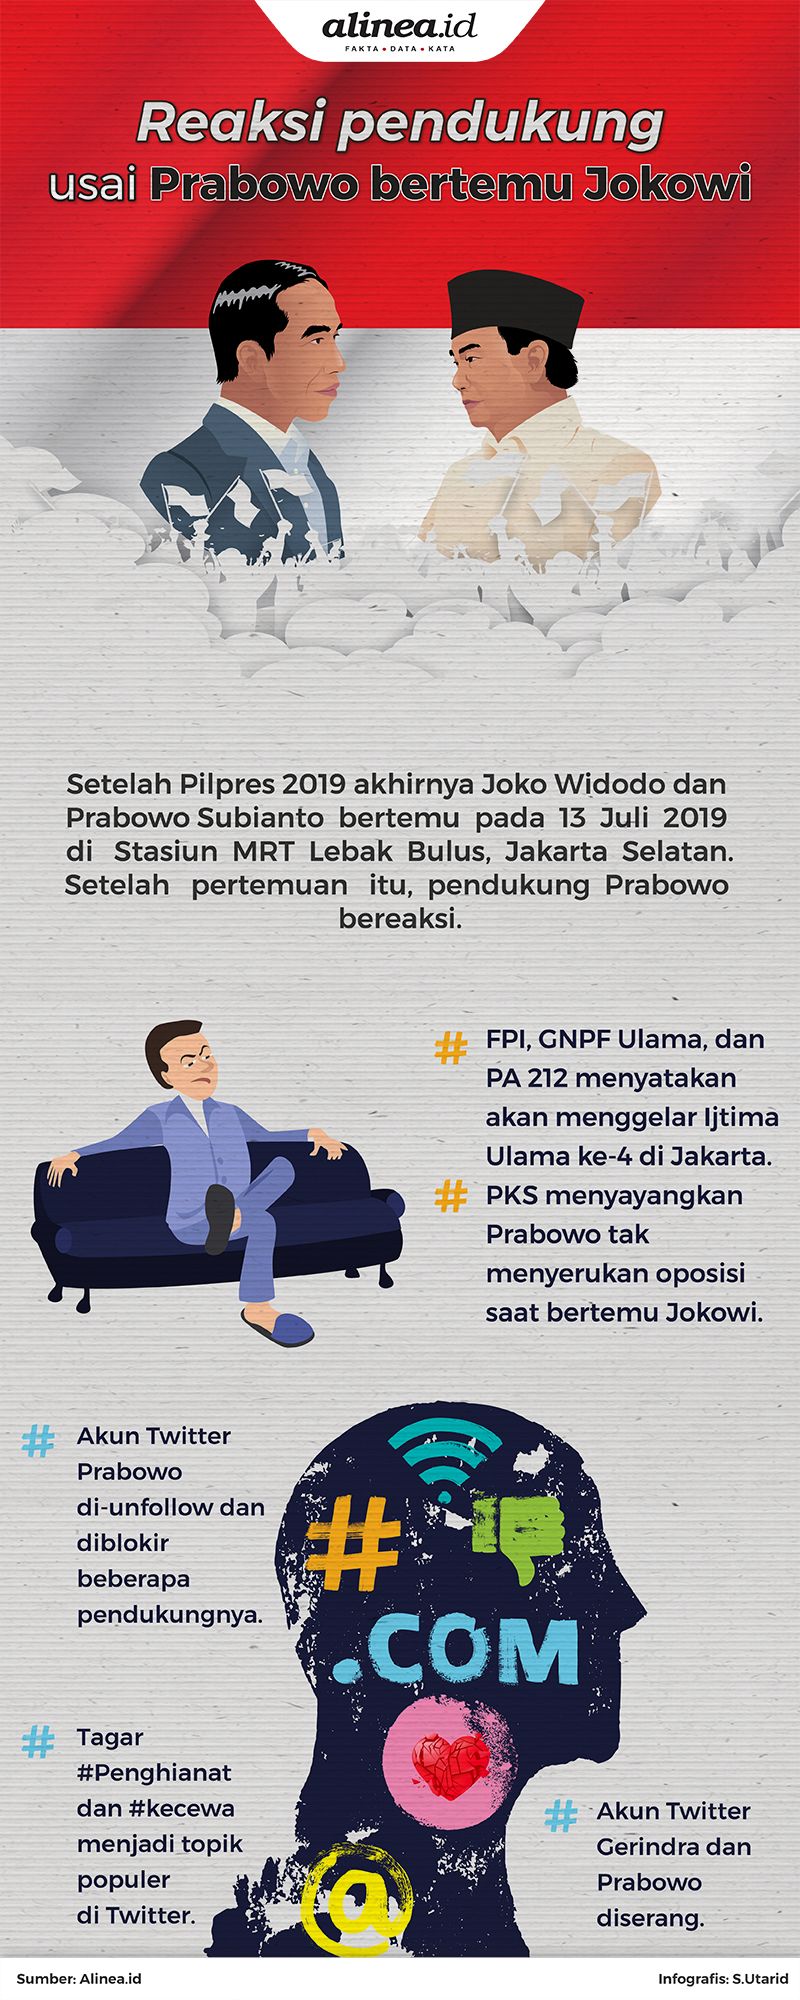 Banyak pendukung Prabowo yang kecewa dengan pertemuan Jokowi dan Prabowo.